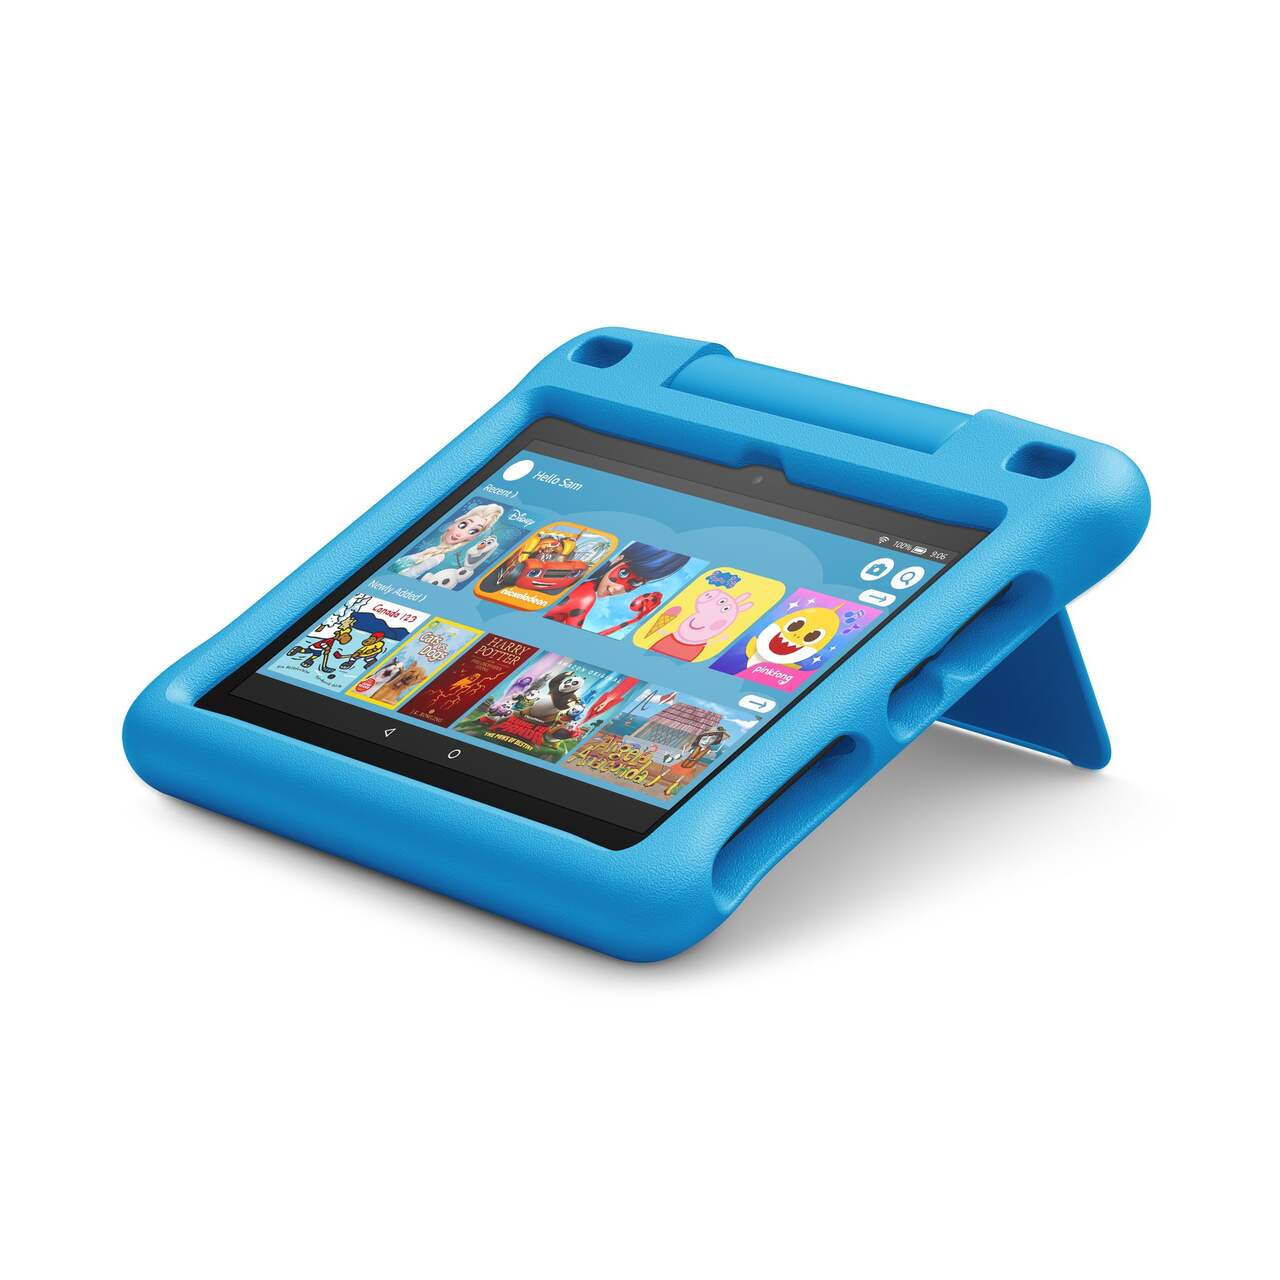  un nouvelle tablette Fire HD 8 et une édition pour enfant